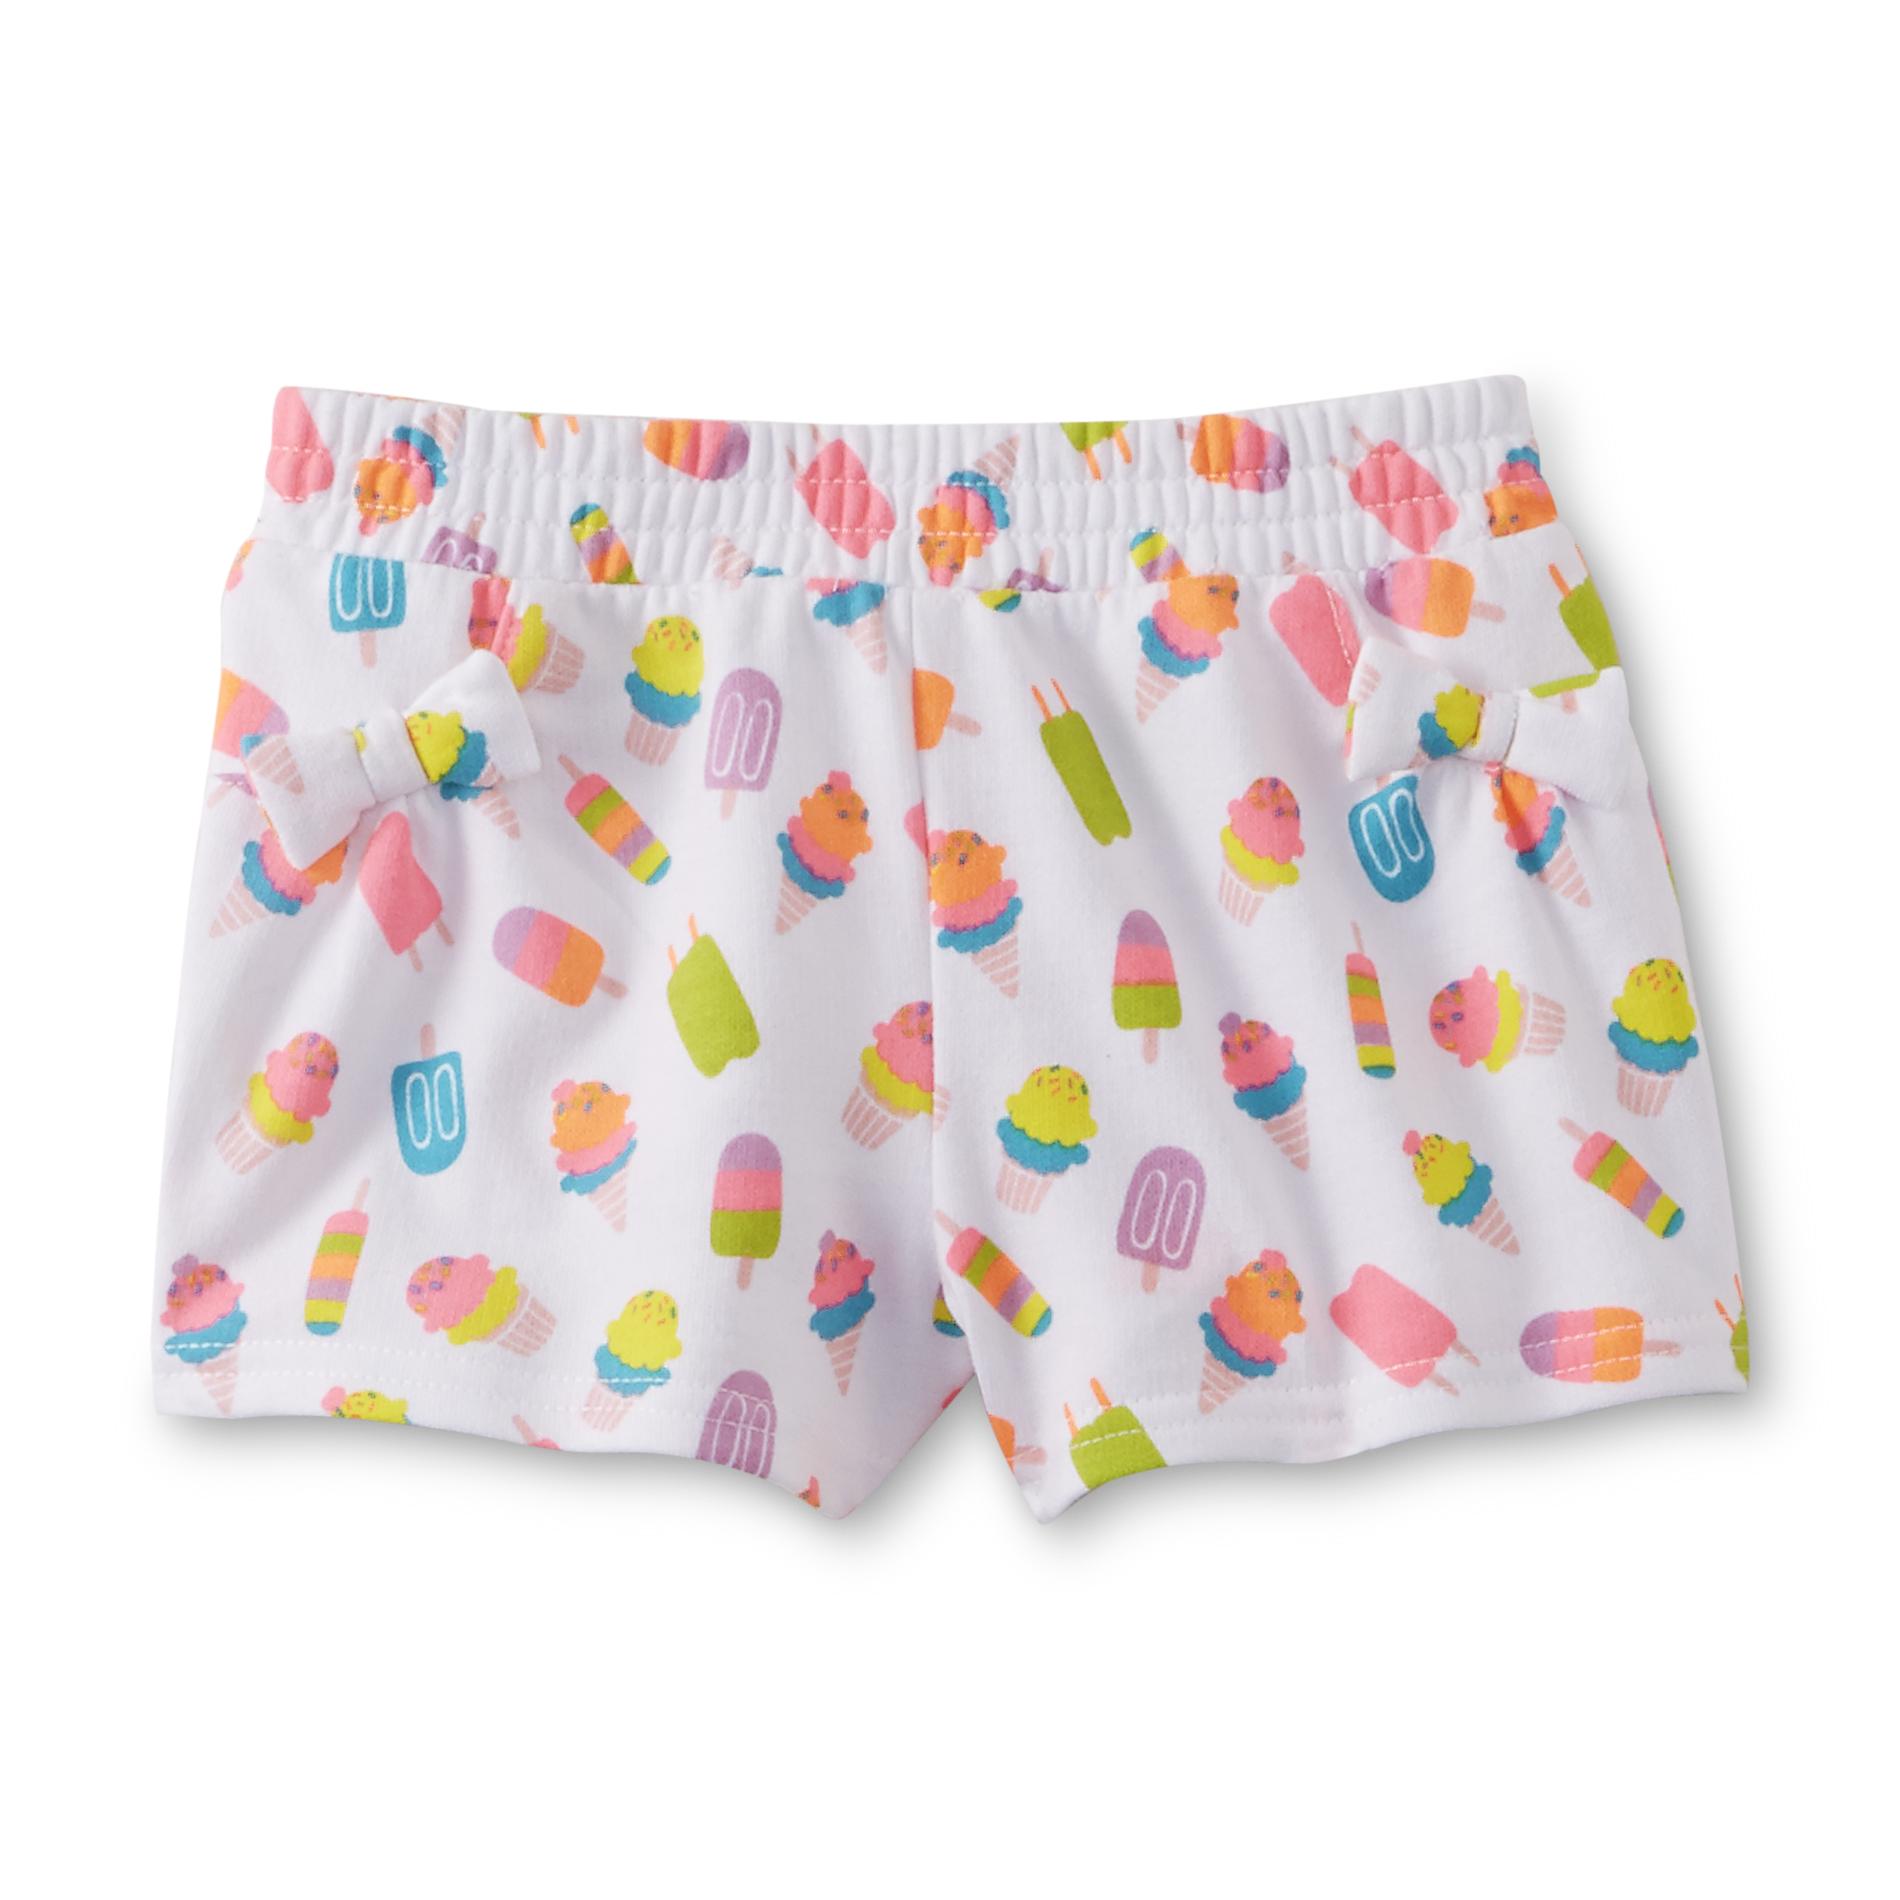 WonderKids Infant & Toddler Girl's Bow Shorts - Ice Cream